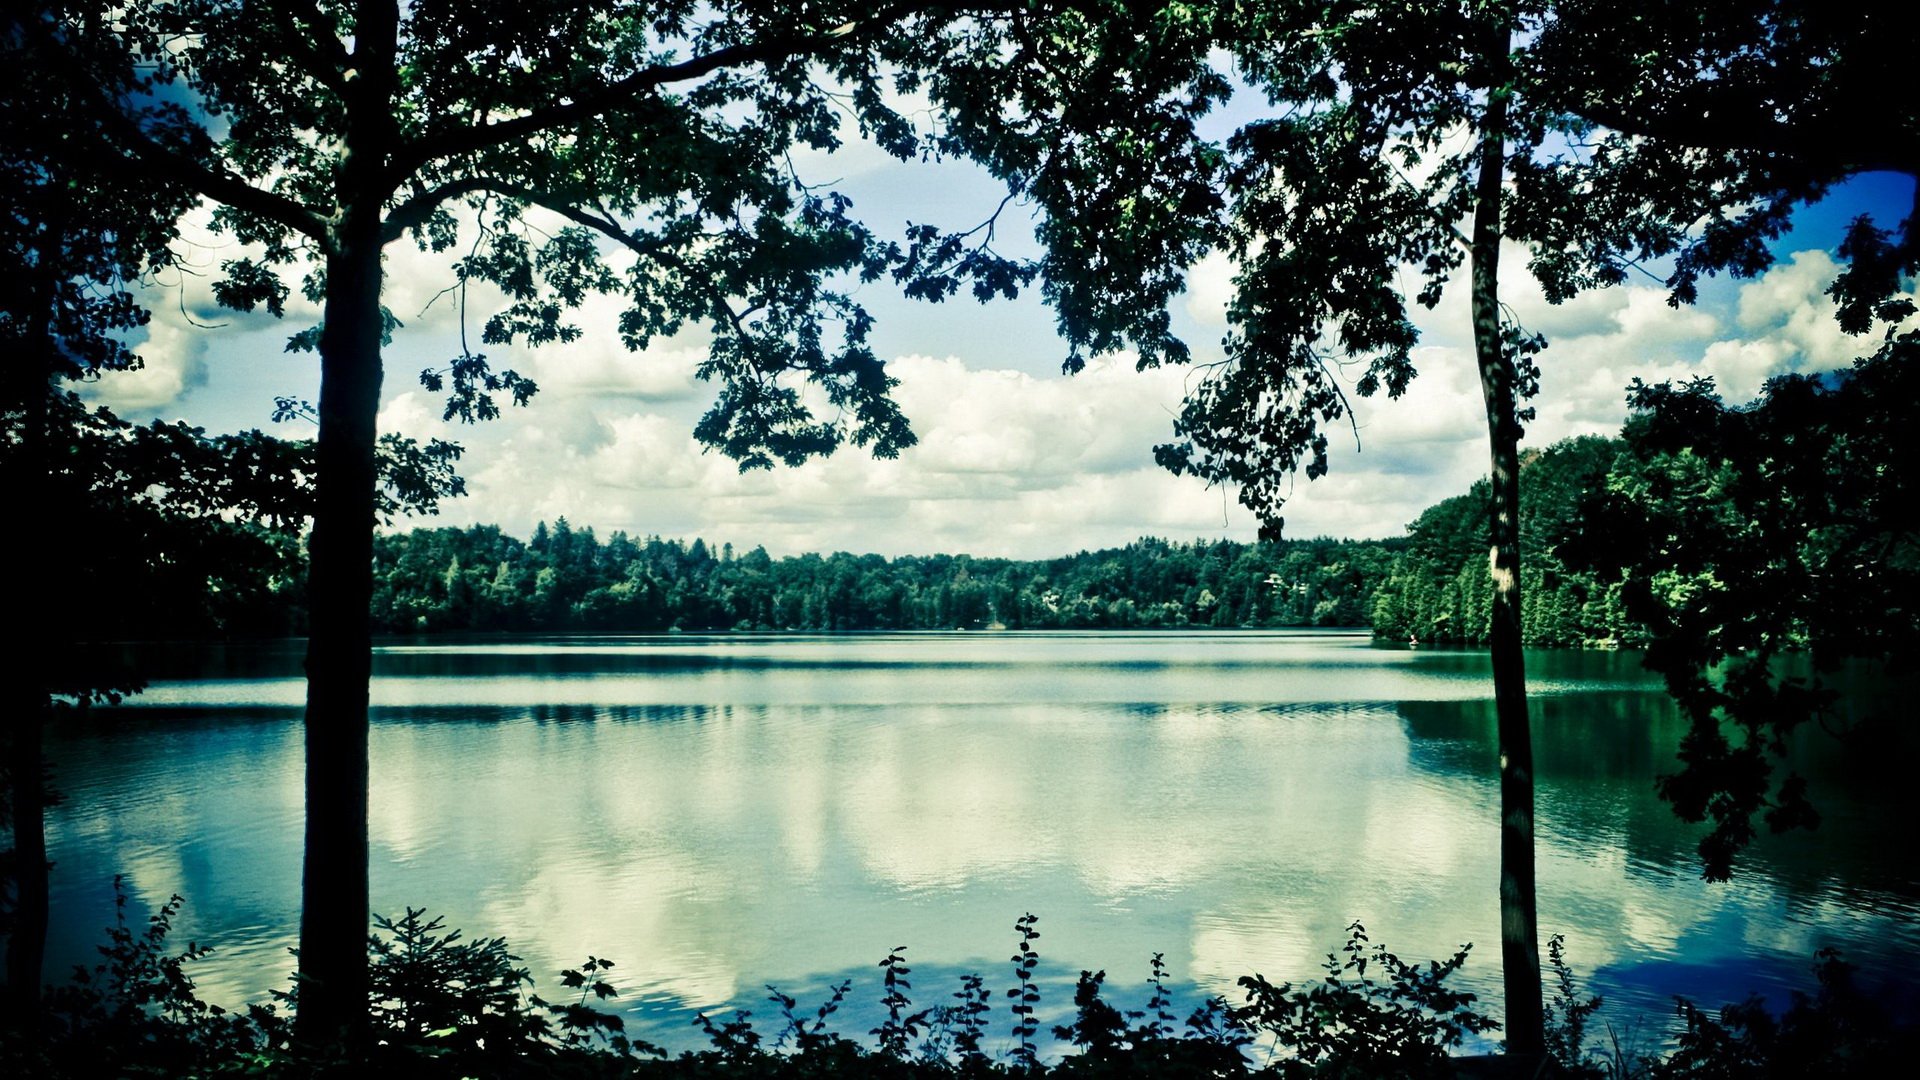 Hồ nước tuyệt đẹp này sẽ làm say đắm lòng người bất kì. Hãy xem ảnh để cảm nhận vẻ đẹp tự nhiên tuyệt đẹp này và tìm kiếm sự bình yên và trầm lắng.